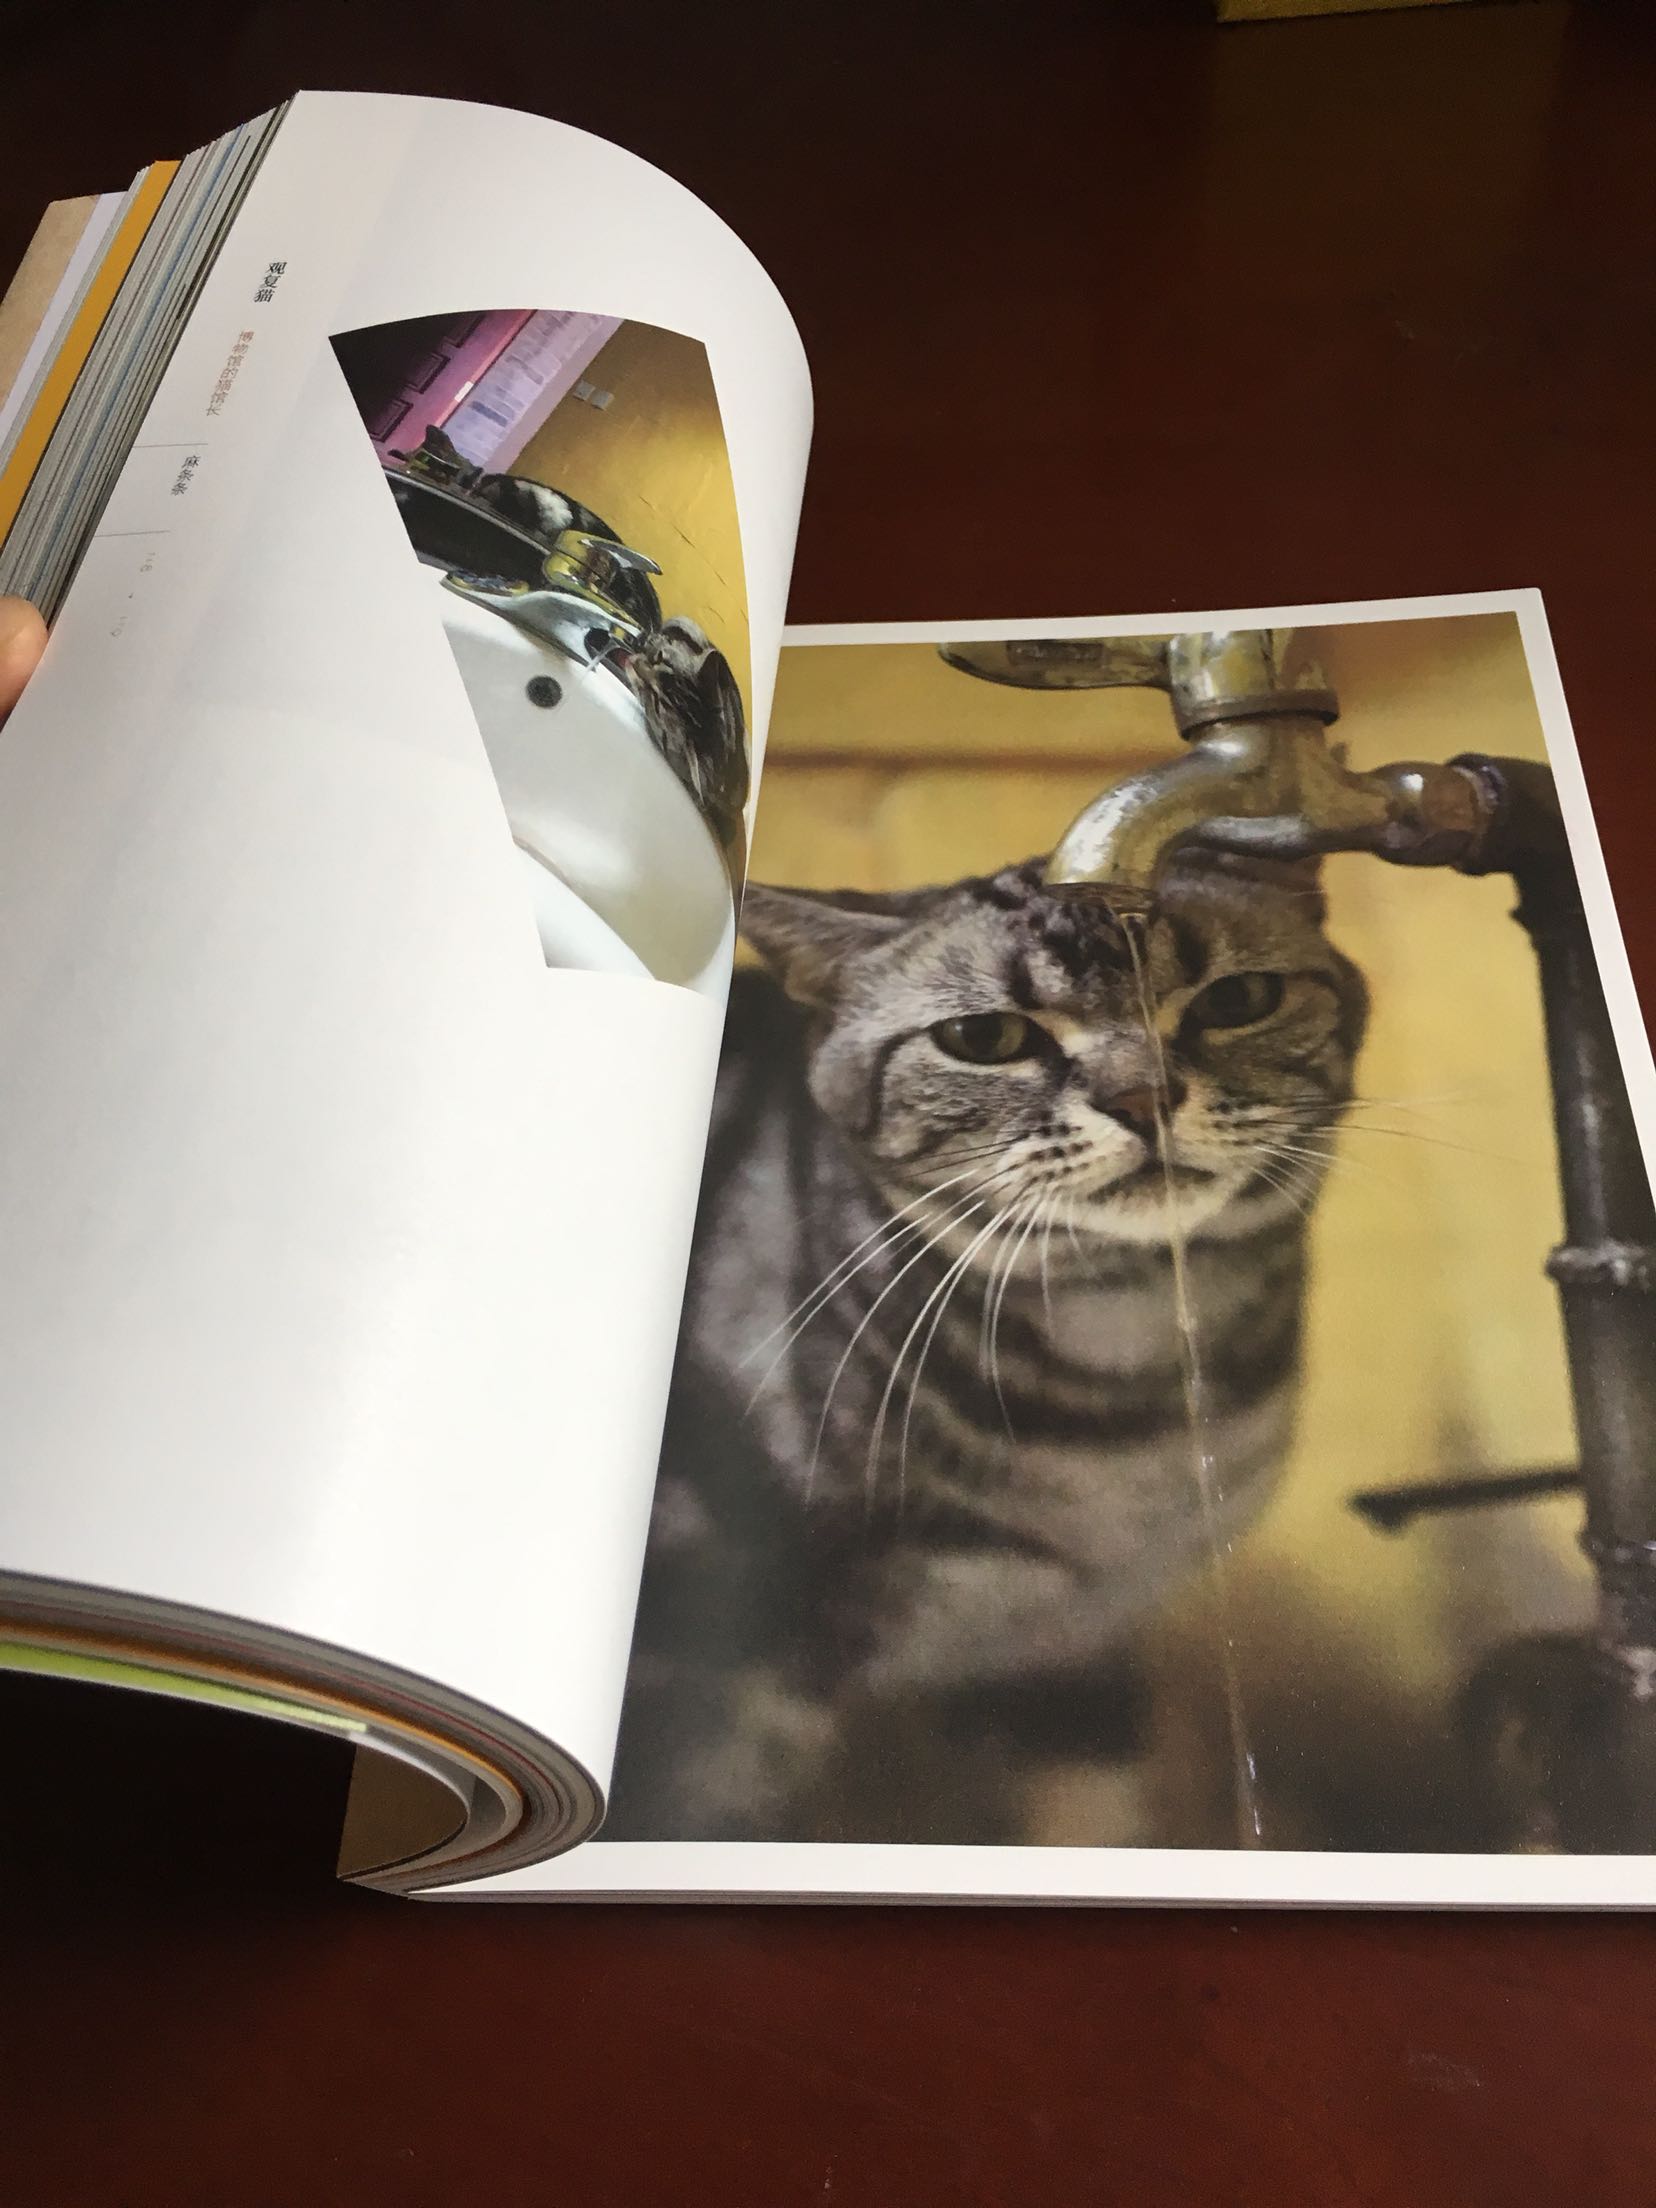 一直对观复博物馆里的猫咪感兴趣，通过这本书更喜欢了，书本纸张质量很好，很满意！